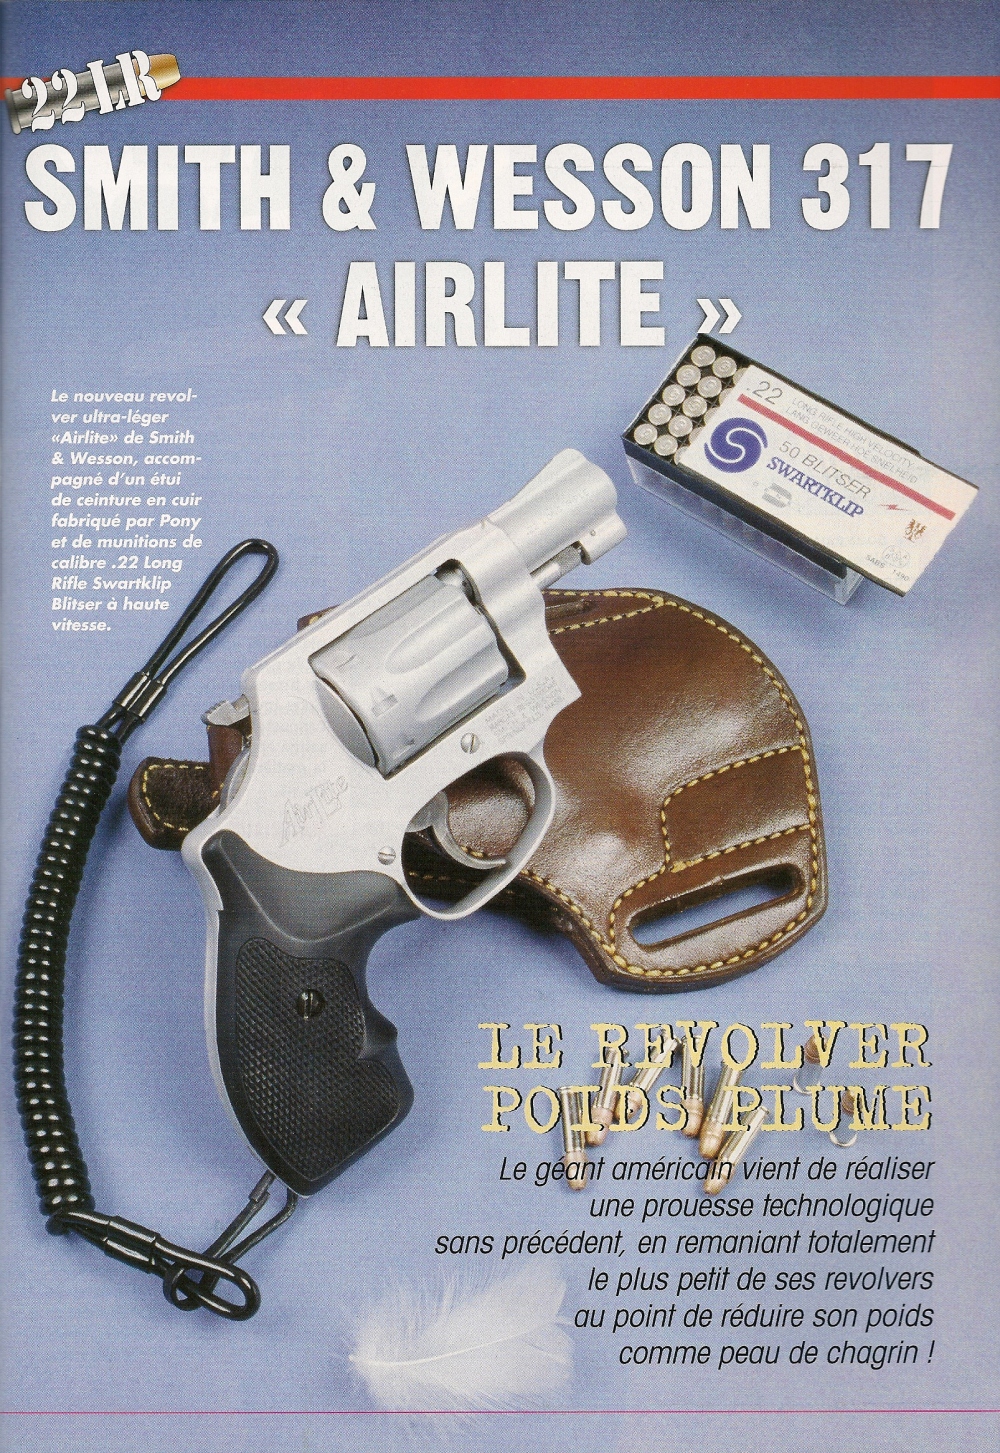 Le revolver ultra-léger S&W modèle 317 AirLite, accompagné d'un étui de ceinture en cuir fabriqué par Pony et de munitions expansives à haute vitesse Swartklip Blitser. 